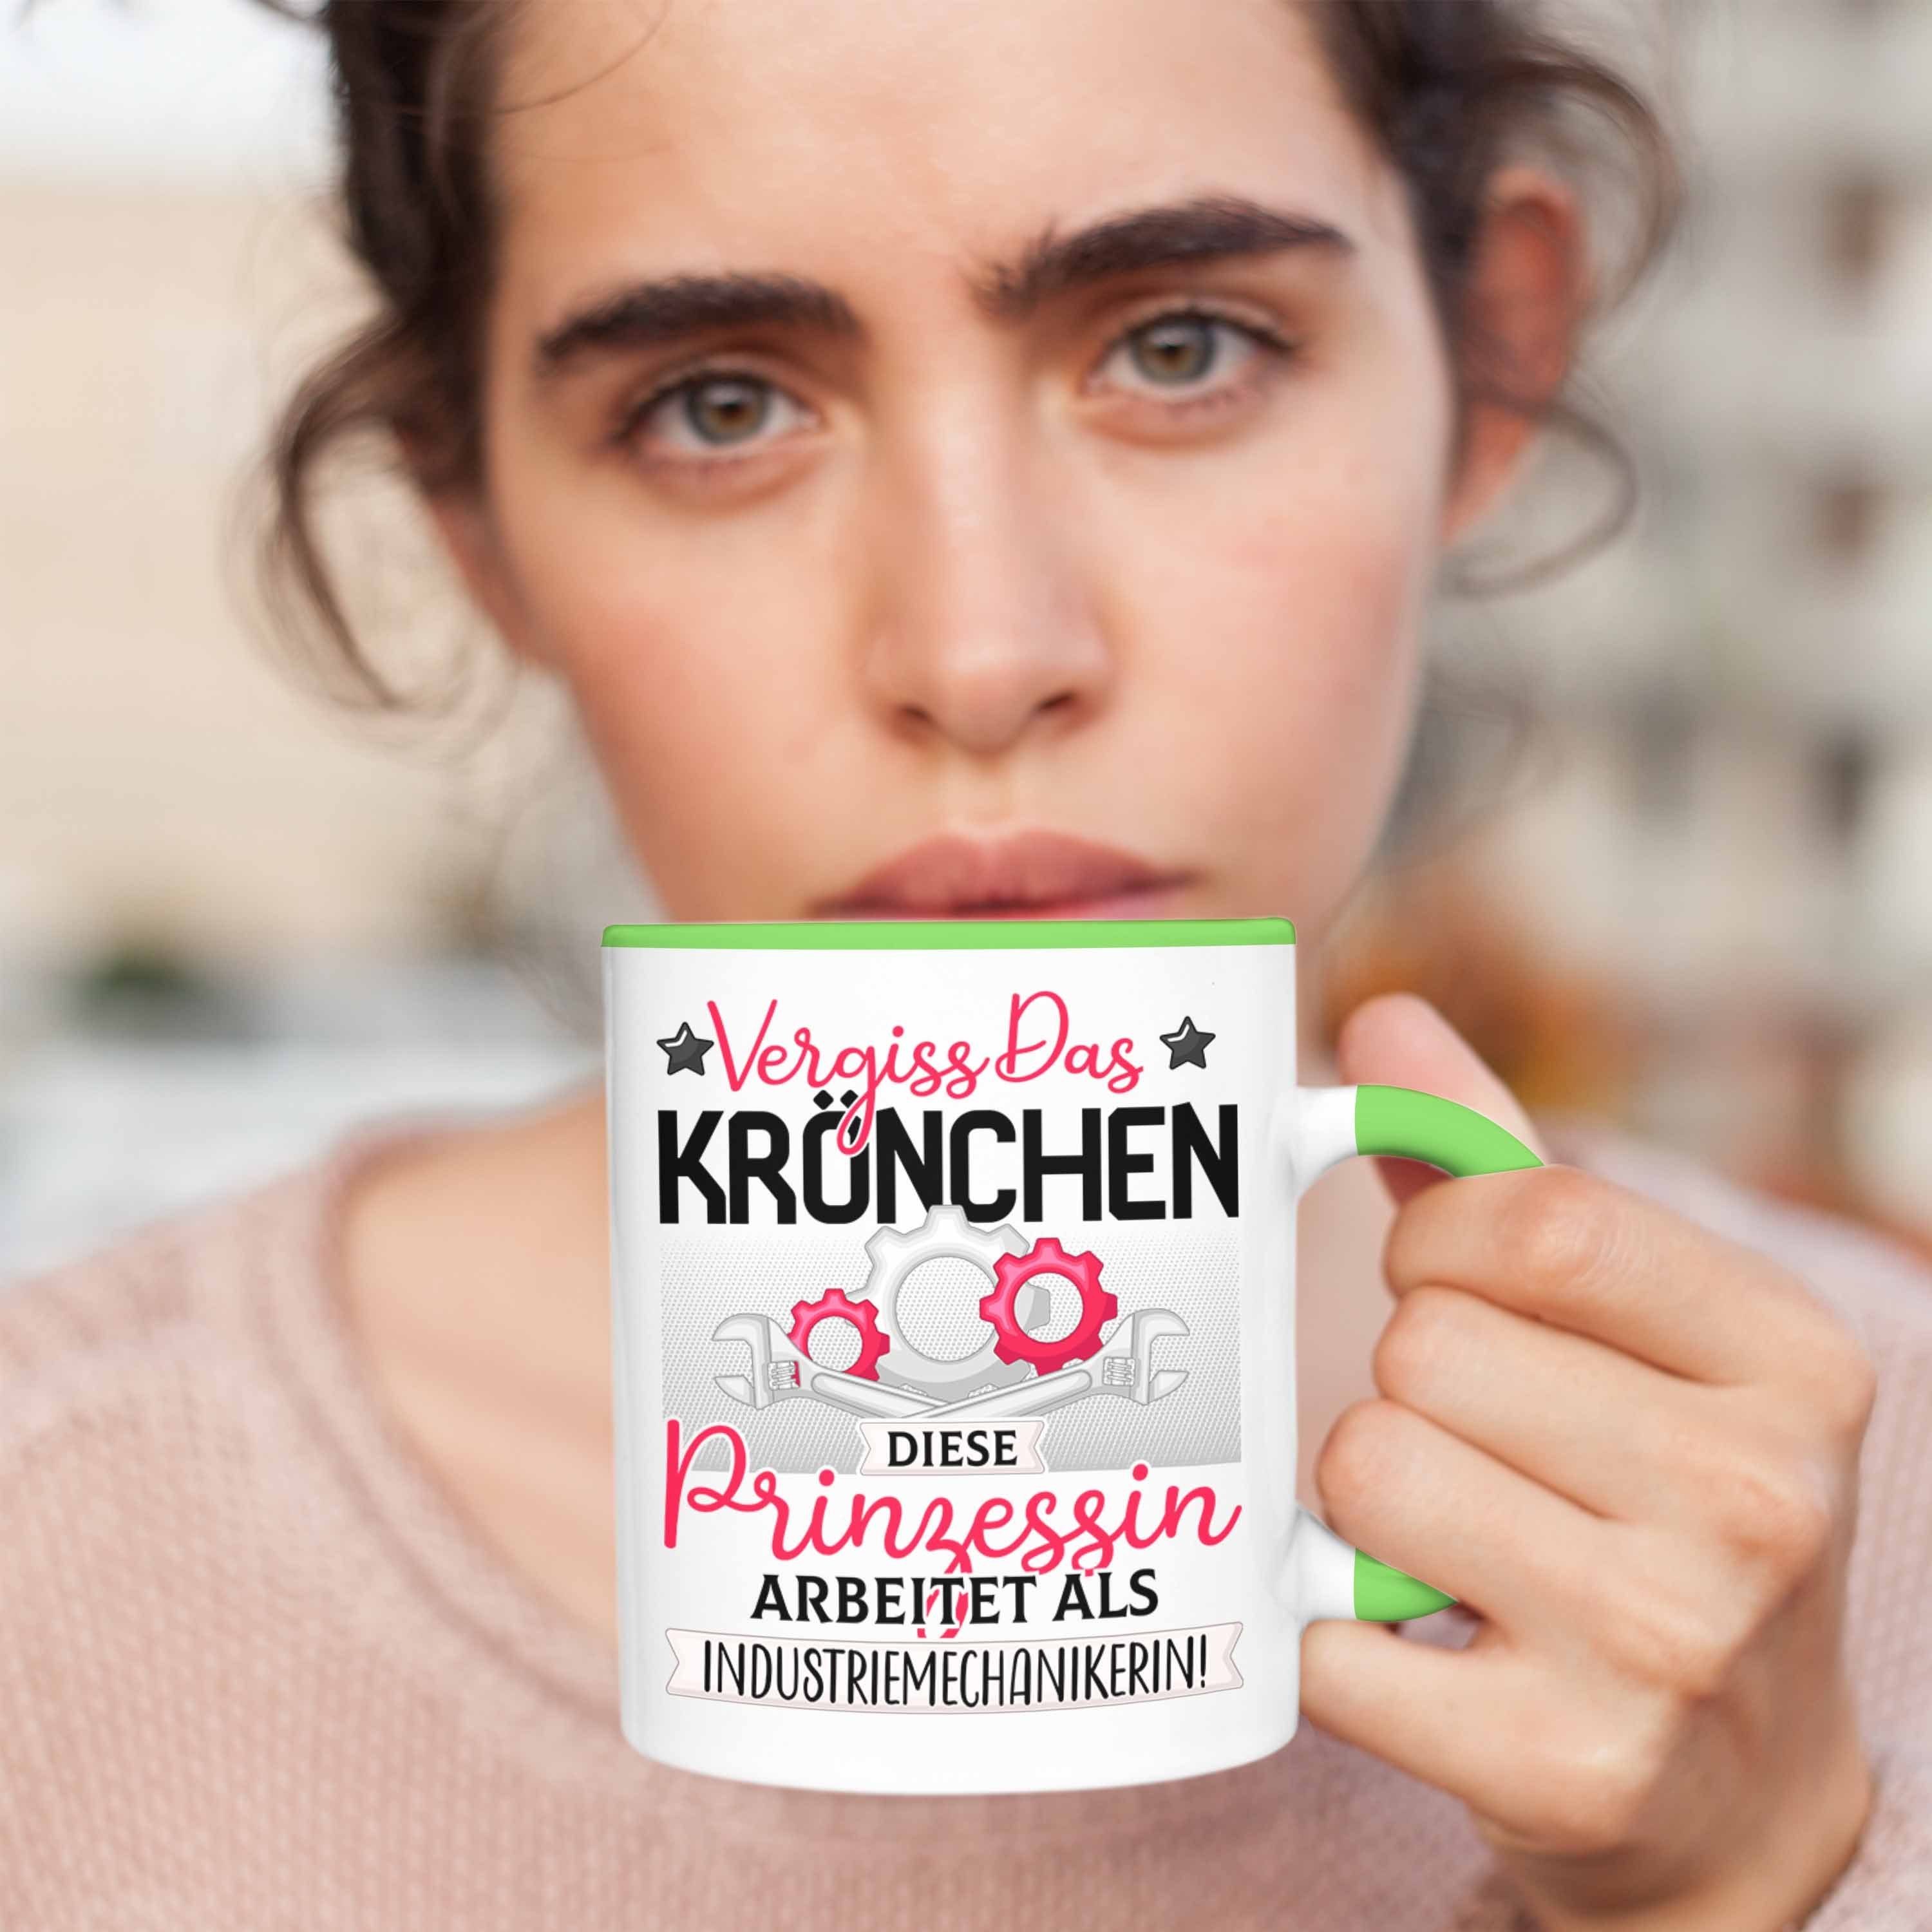 Das Vergiss Industriemechanikerin Trendation Grün Frauen Geschenk Tasse Tasse Kröchen Spruch